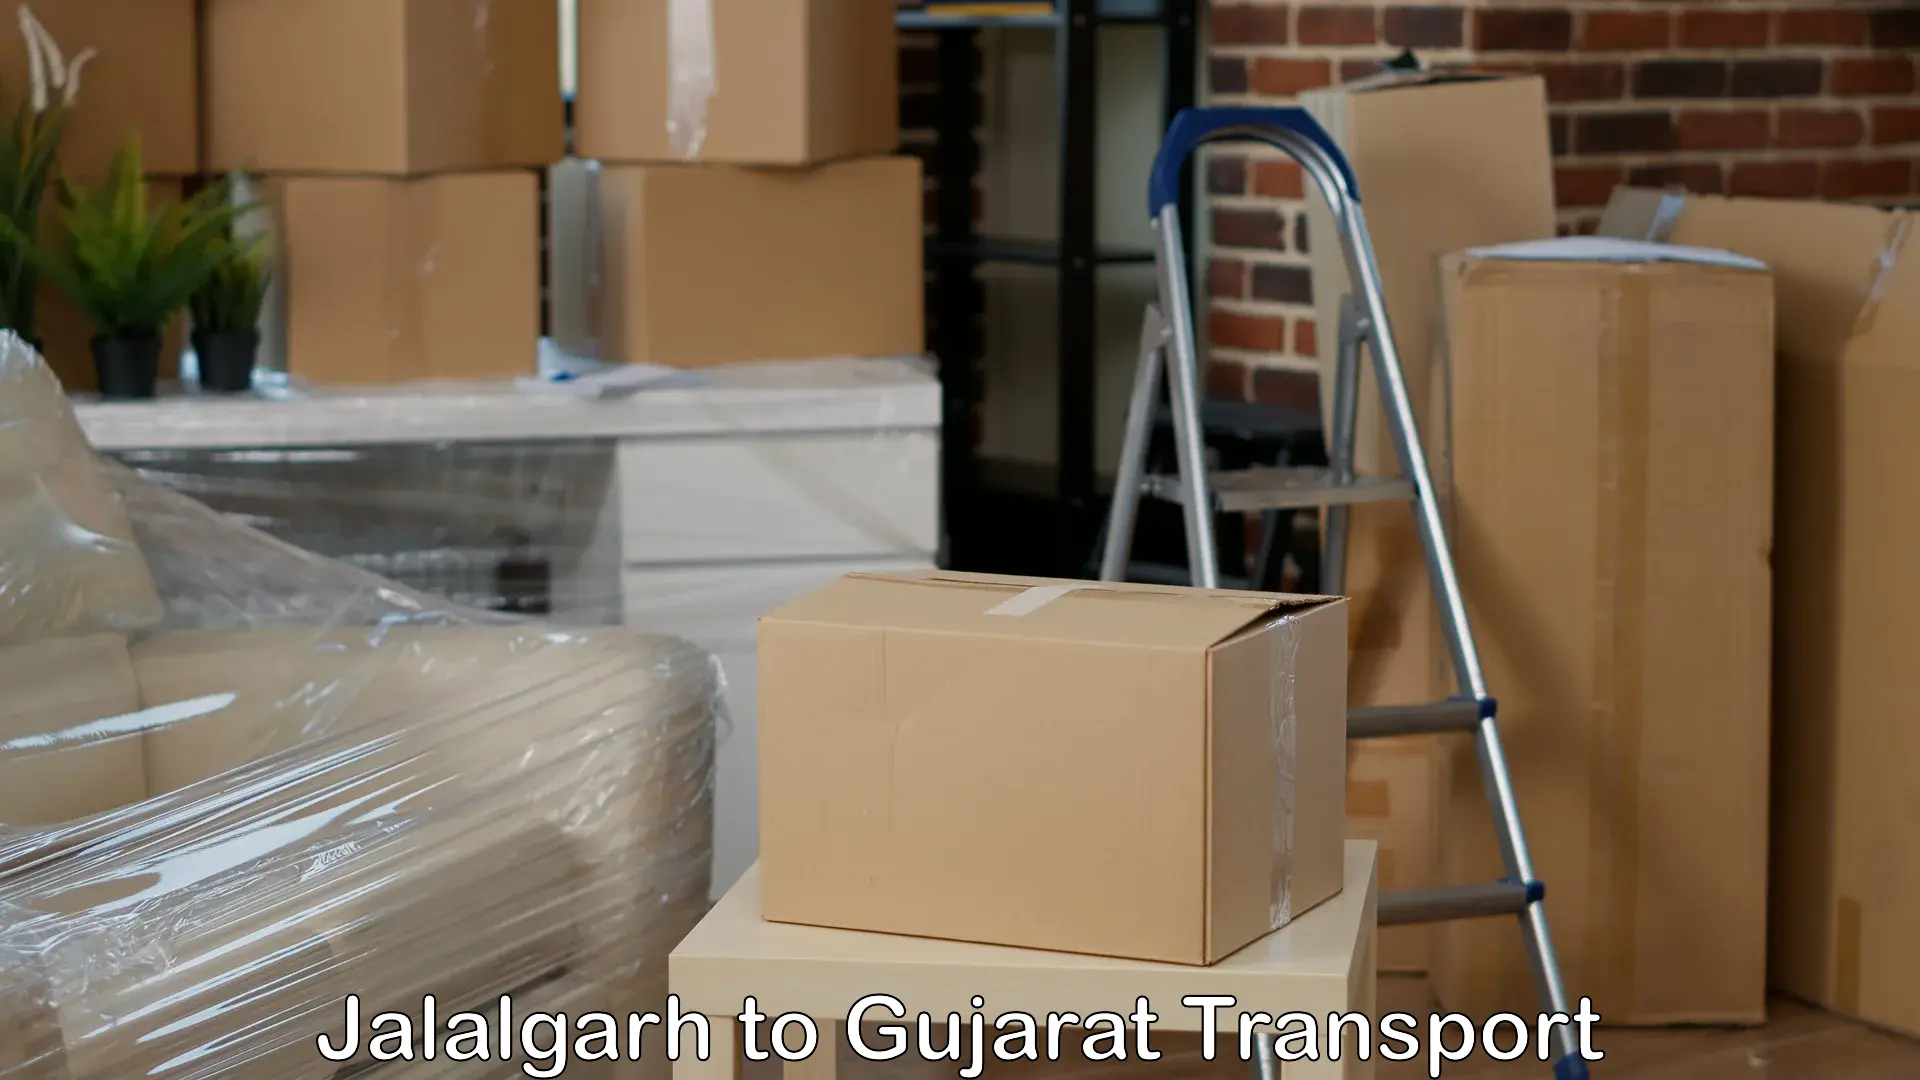 Road transport online services Jalalgarh to Gandhinagar